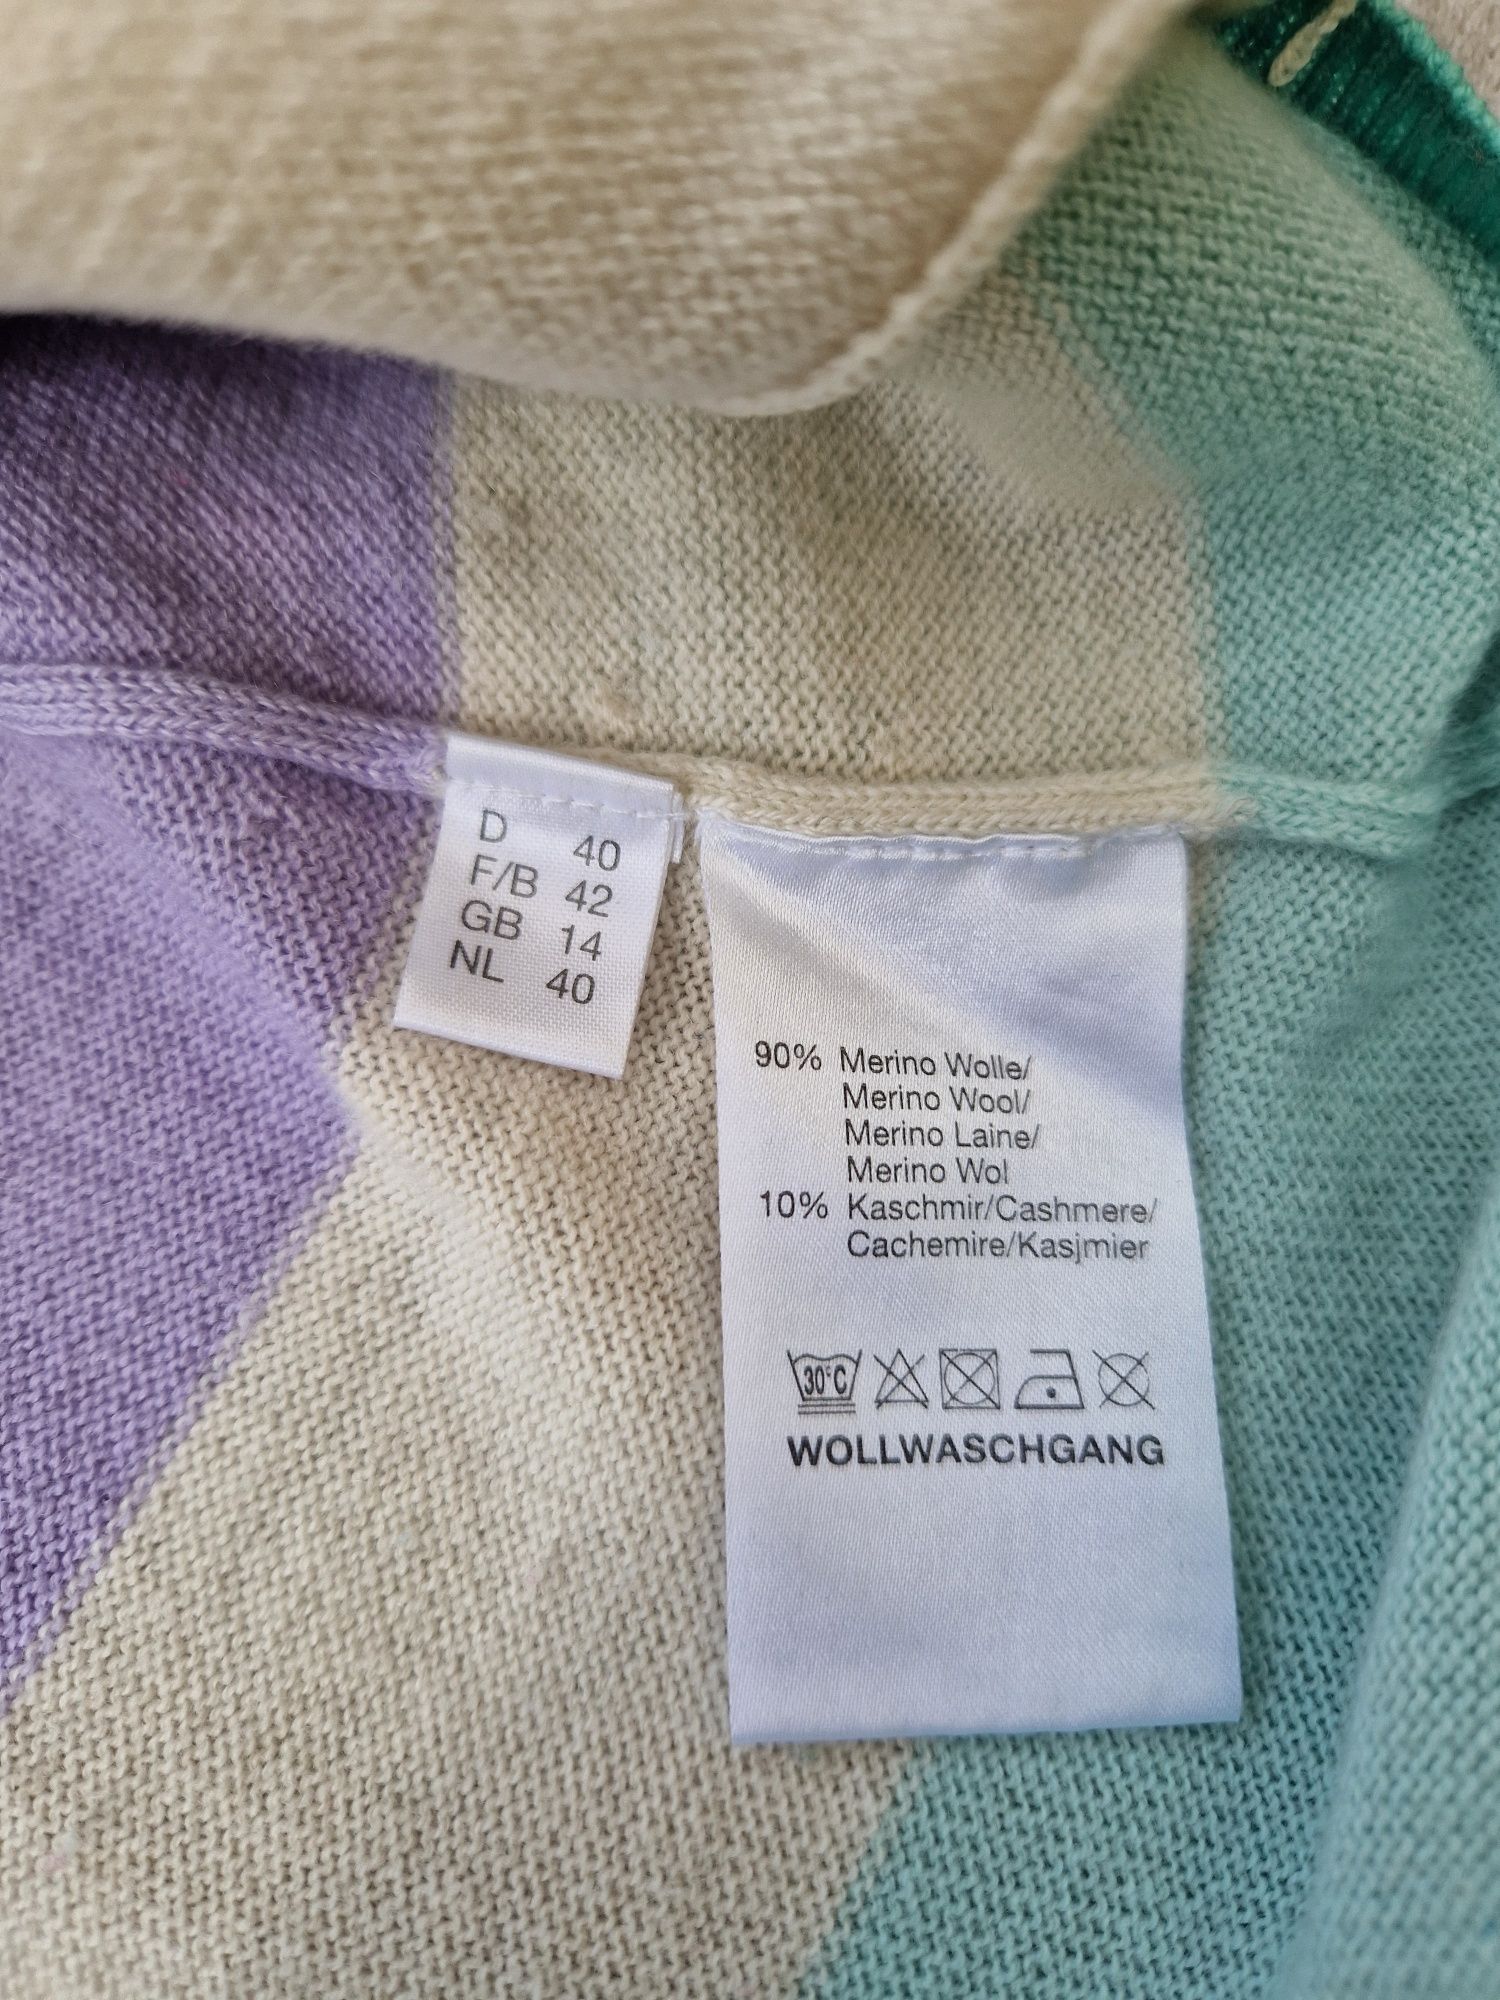 Merino kaszmir piękny sweterek PUBLIC pastelowe kolory CUDO